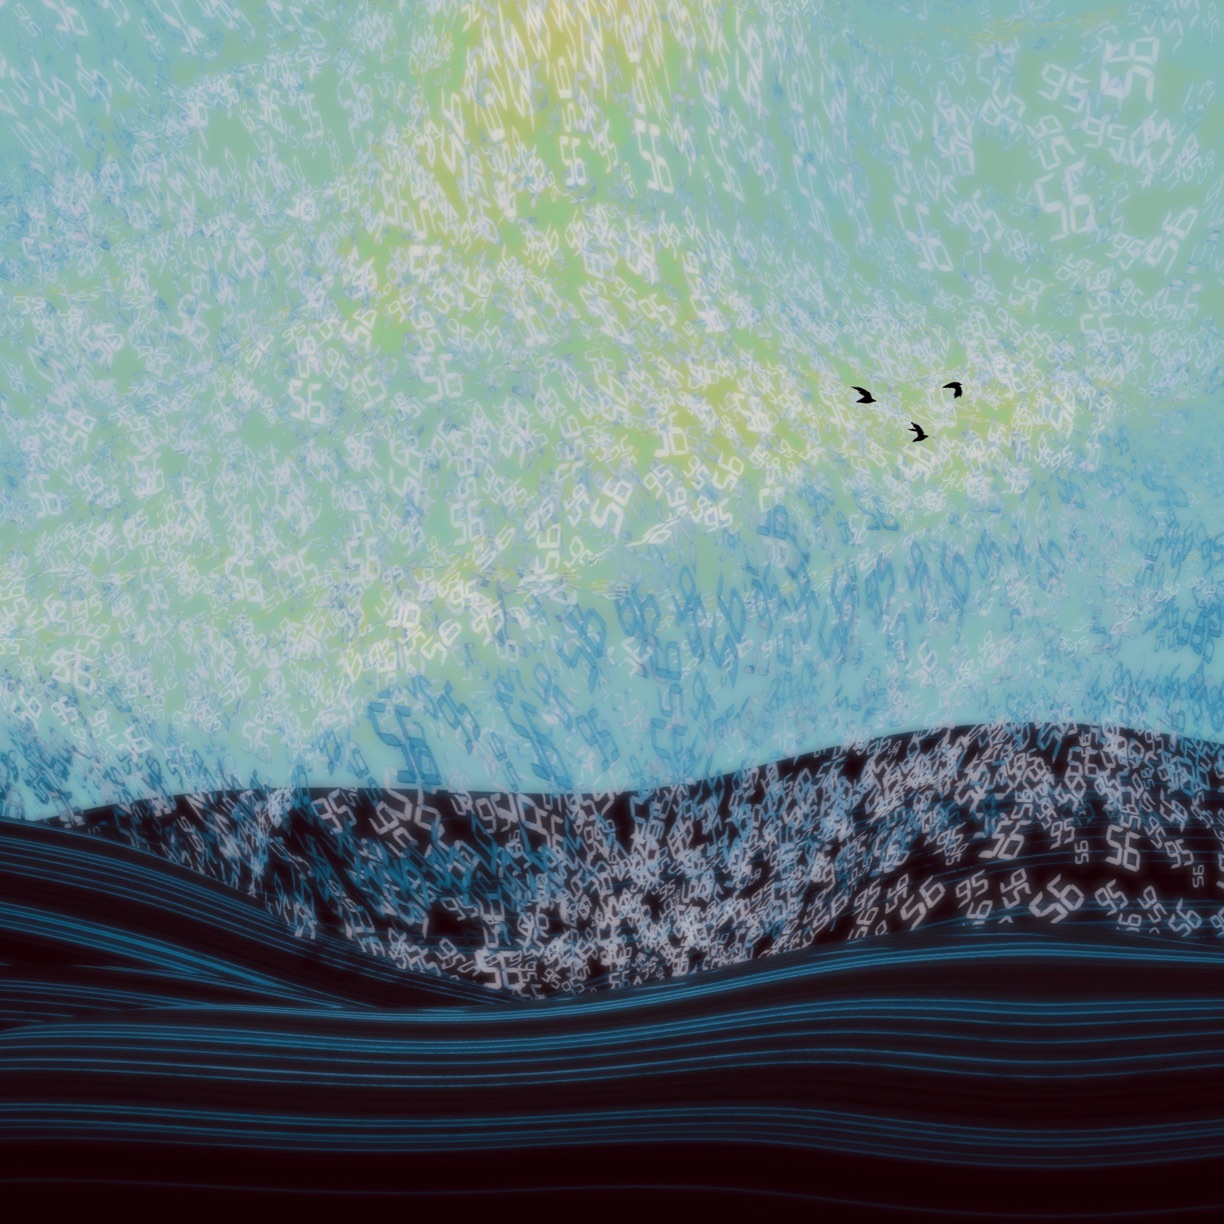 Atsushigraphのデジタルアート作品「Sky Hymn」の画像です。